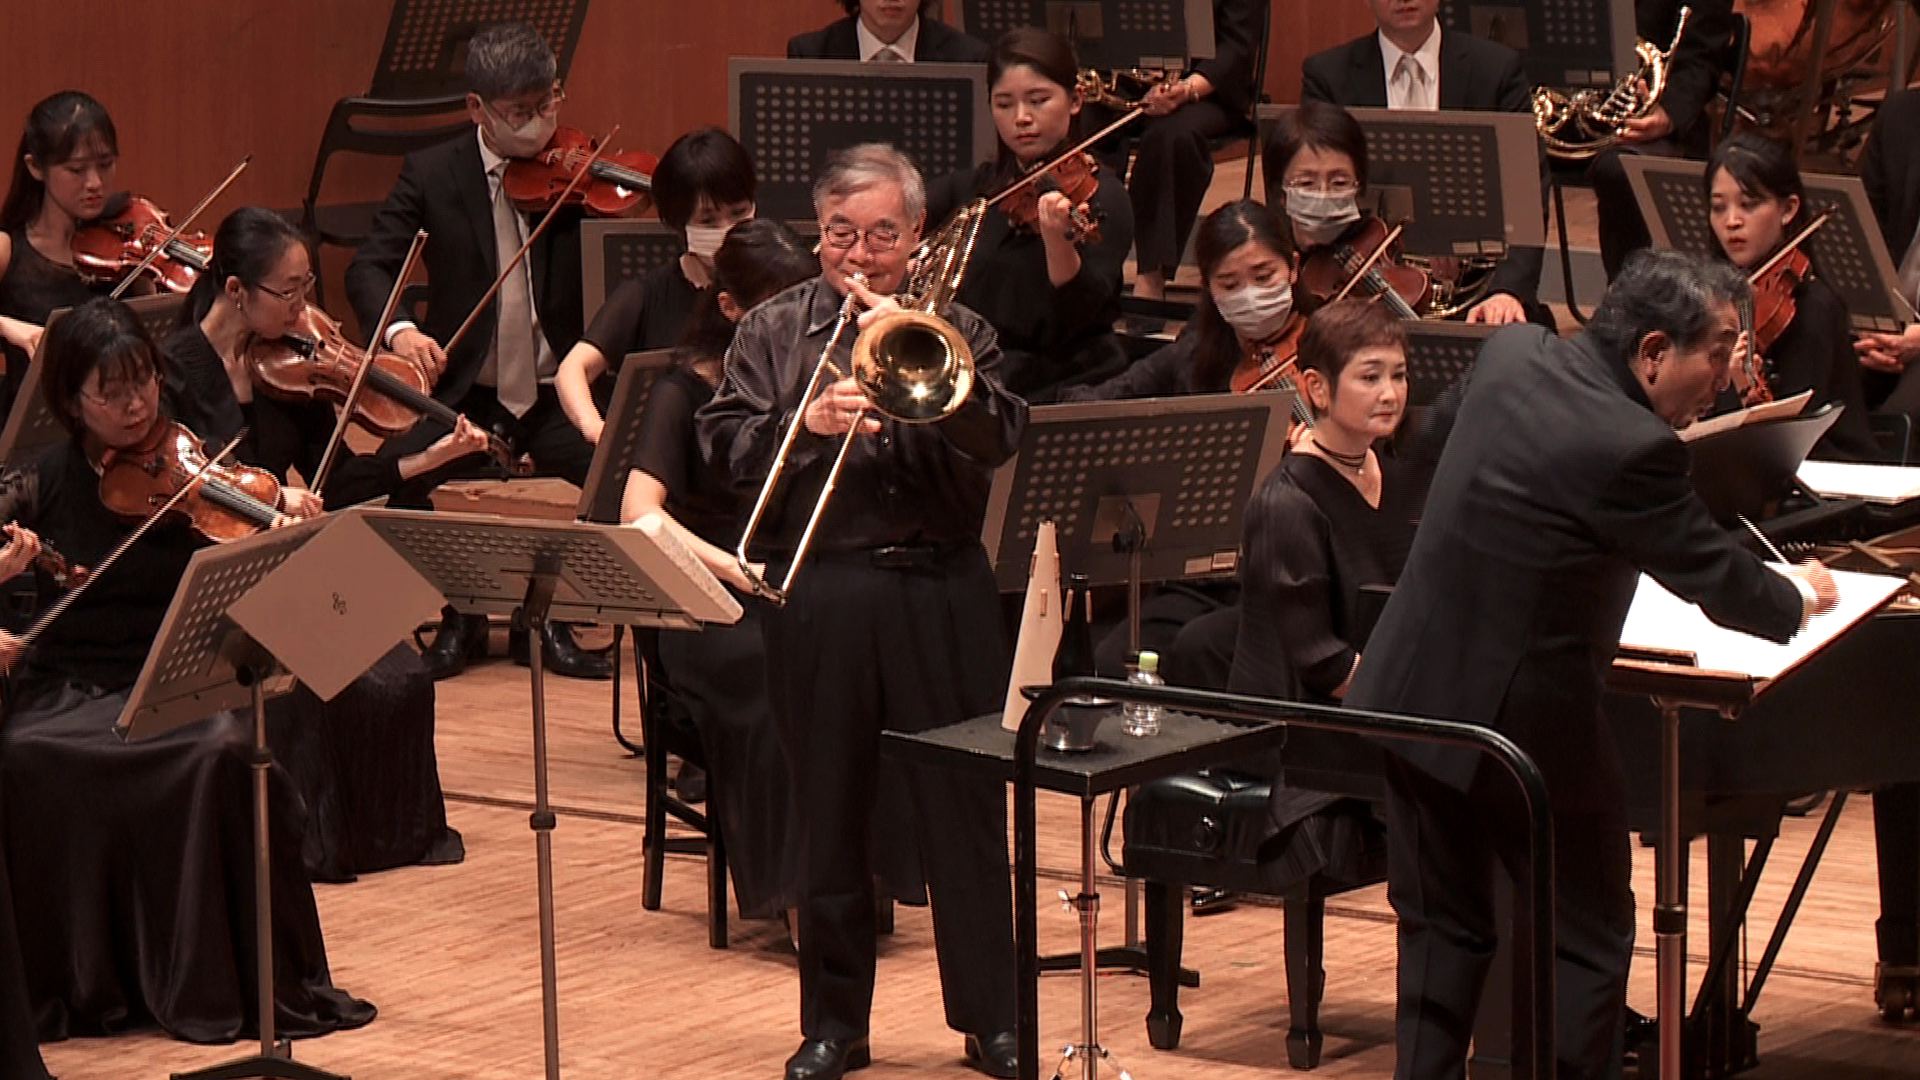 指揮：山下一史 トロンボーン：箱山芳樹（千葉交響楽団トロンボーン奏者） 千葉交響楽団 吉松 隆：トロンボーン協奏曲「オリオン・マシーン」 Kazufumi Yamashita, Conducor Yoshiki Hakoyama: Tronbone Chiba Symphomy Orchestra Takashi Yoshimatsut: Trombone Concerto, Op. 55, "Orion Machine"